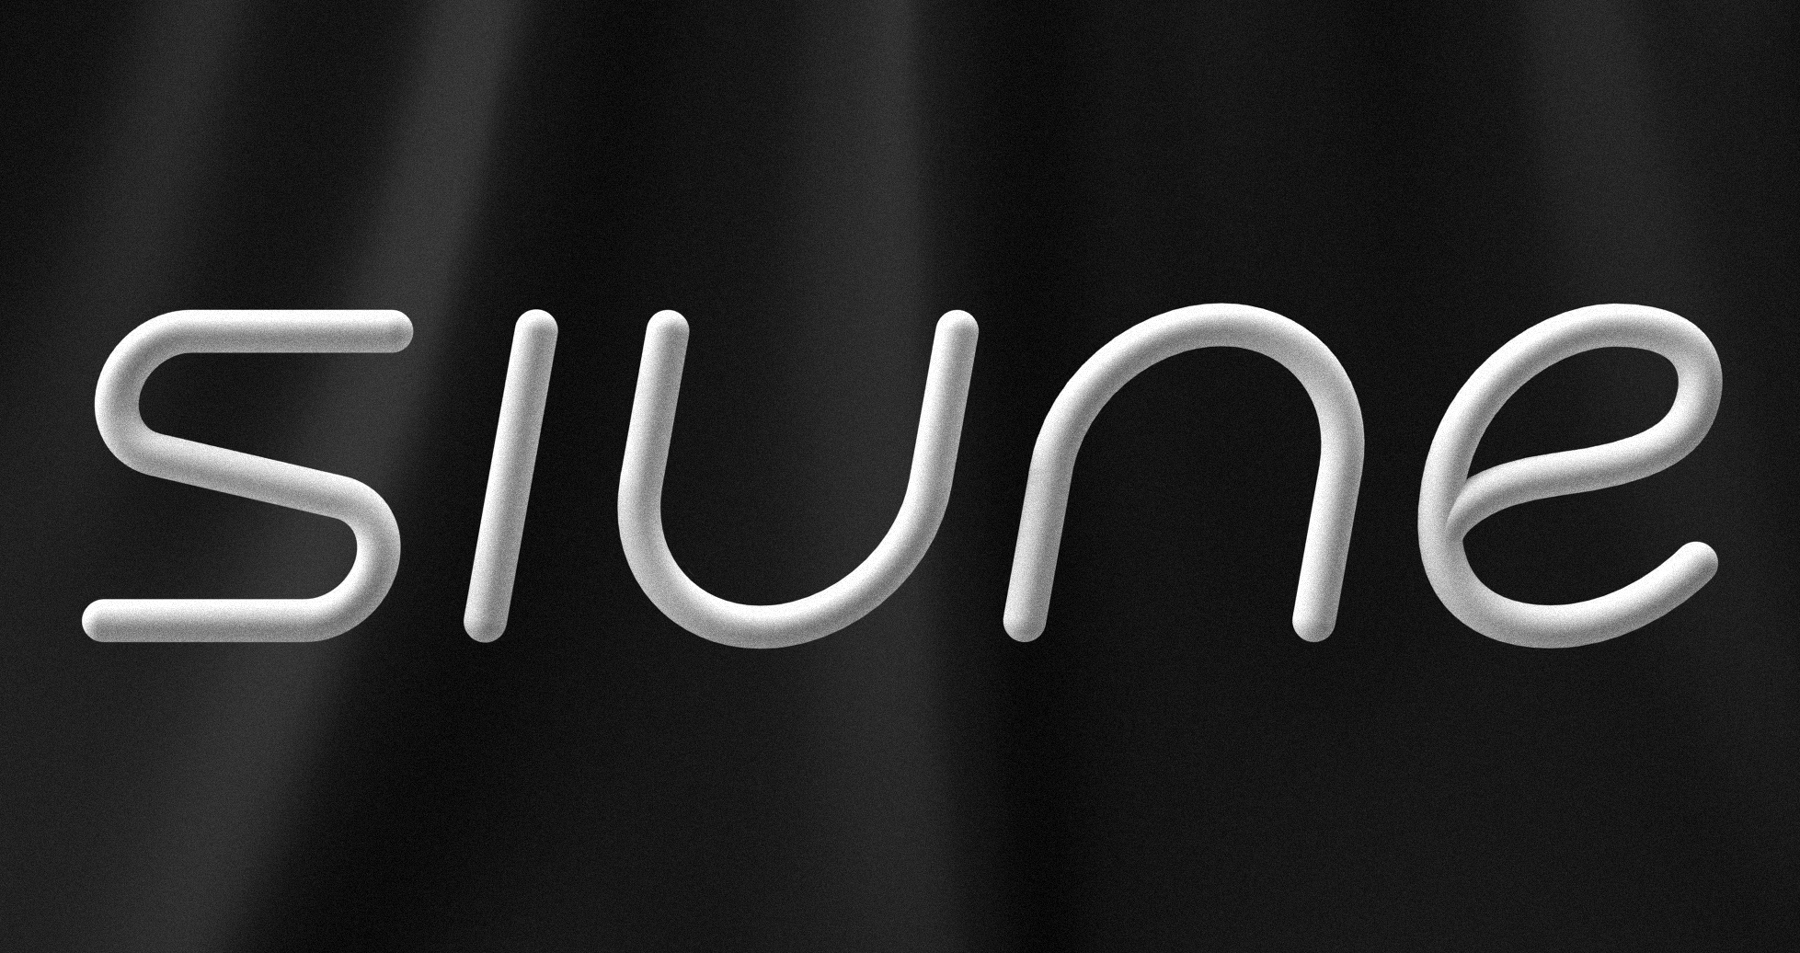 Lucas Guerra Studio Created the Branding for Siune